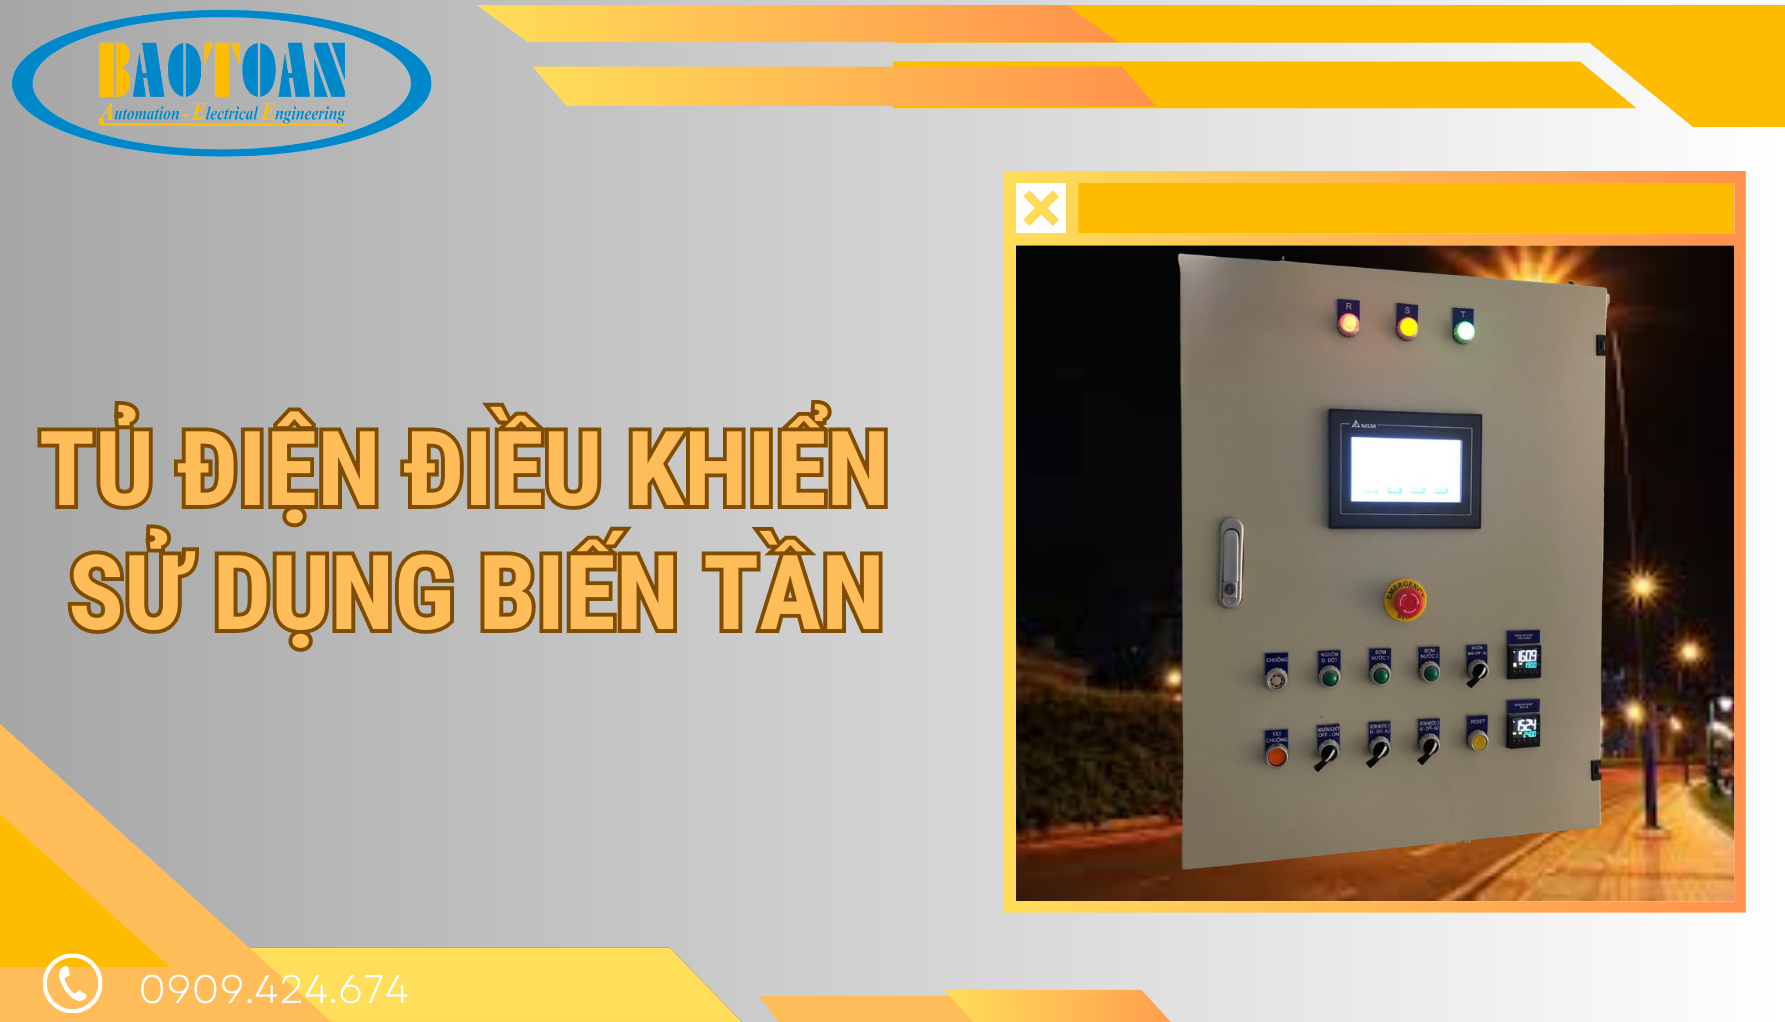 Tủ điện điều khiển lò hơi sử dụng biến tần tại BaoToanTech